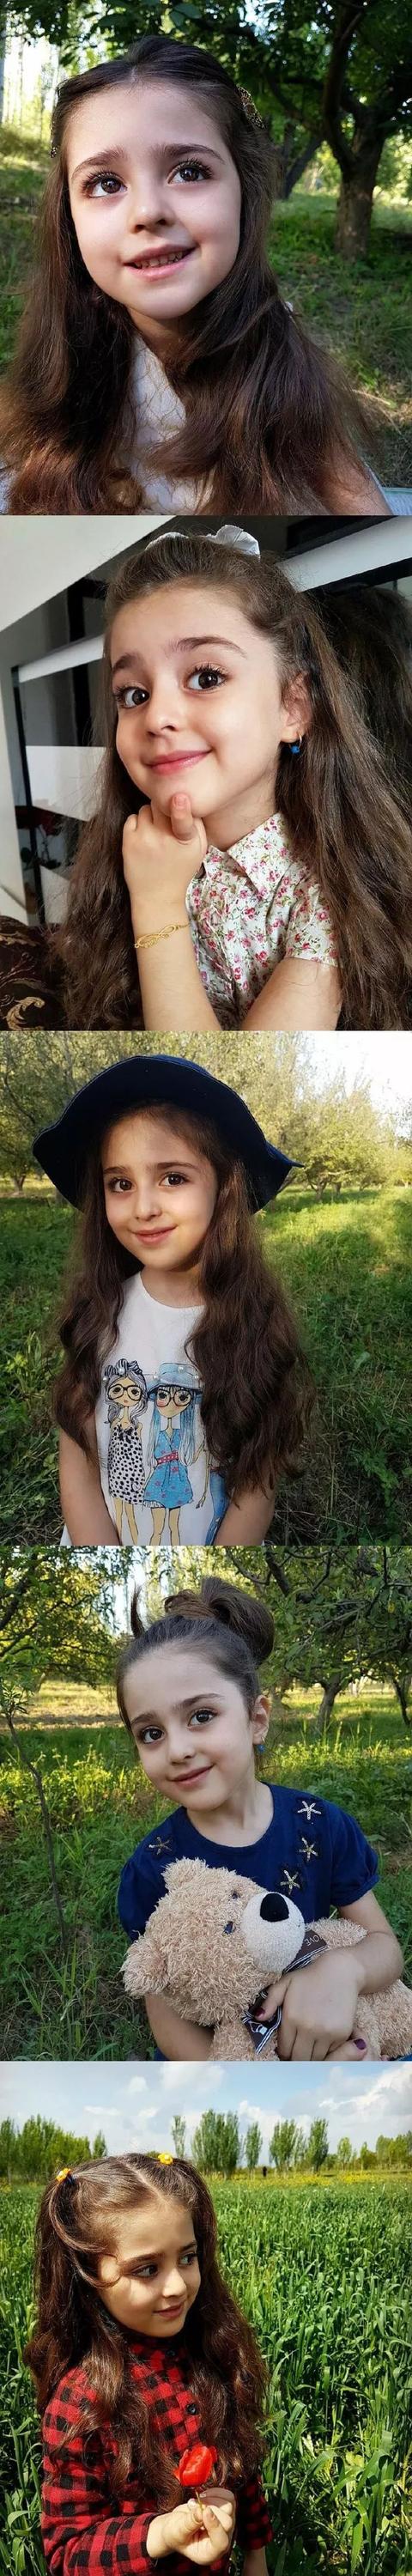 被称为全球最美!8岁伊朗人气小女孩,父亲辞职为她保镖